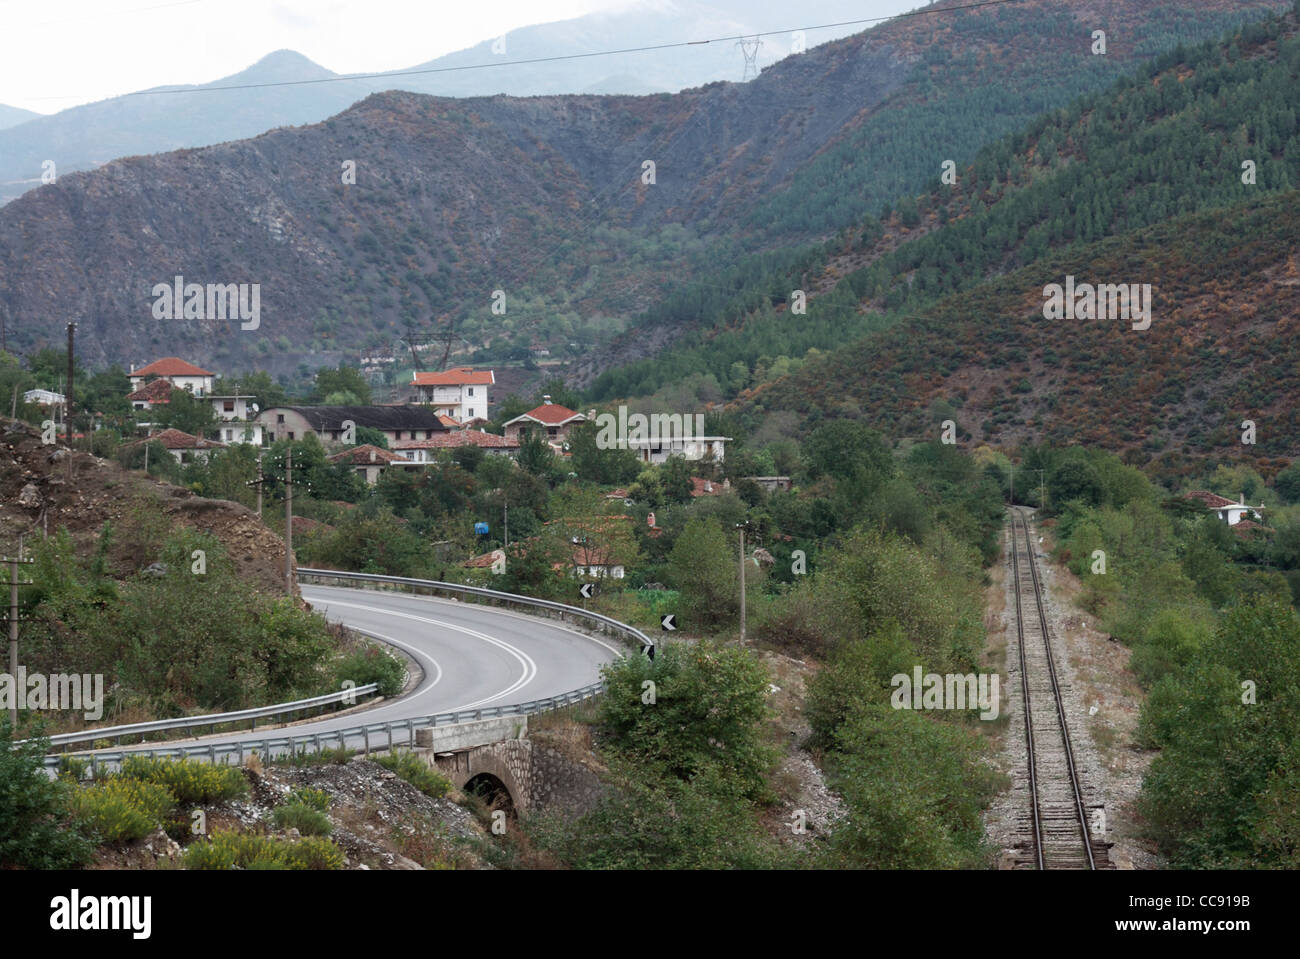 Albanische Landschaft, Eisenbahn und Straße. Stockfoto